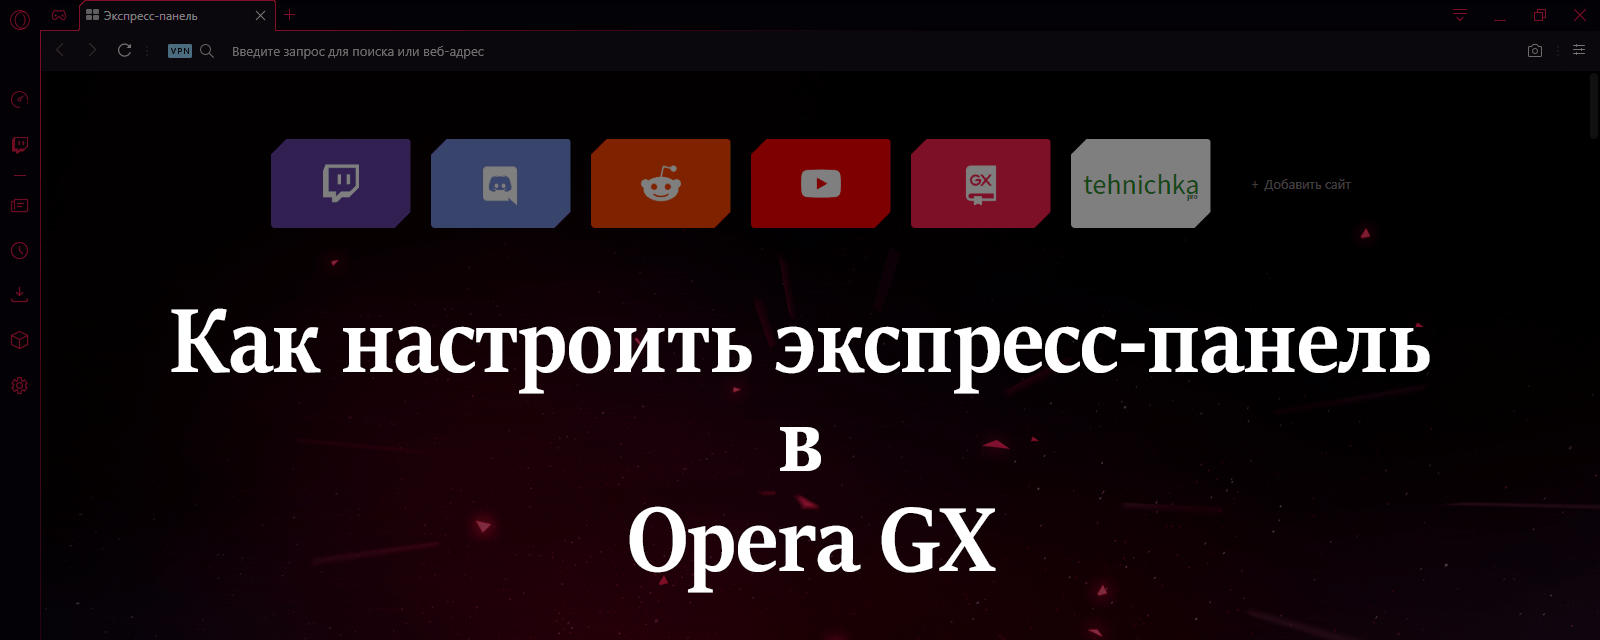 Как настроить экспресс-панель в Opera GX